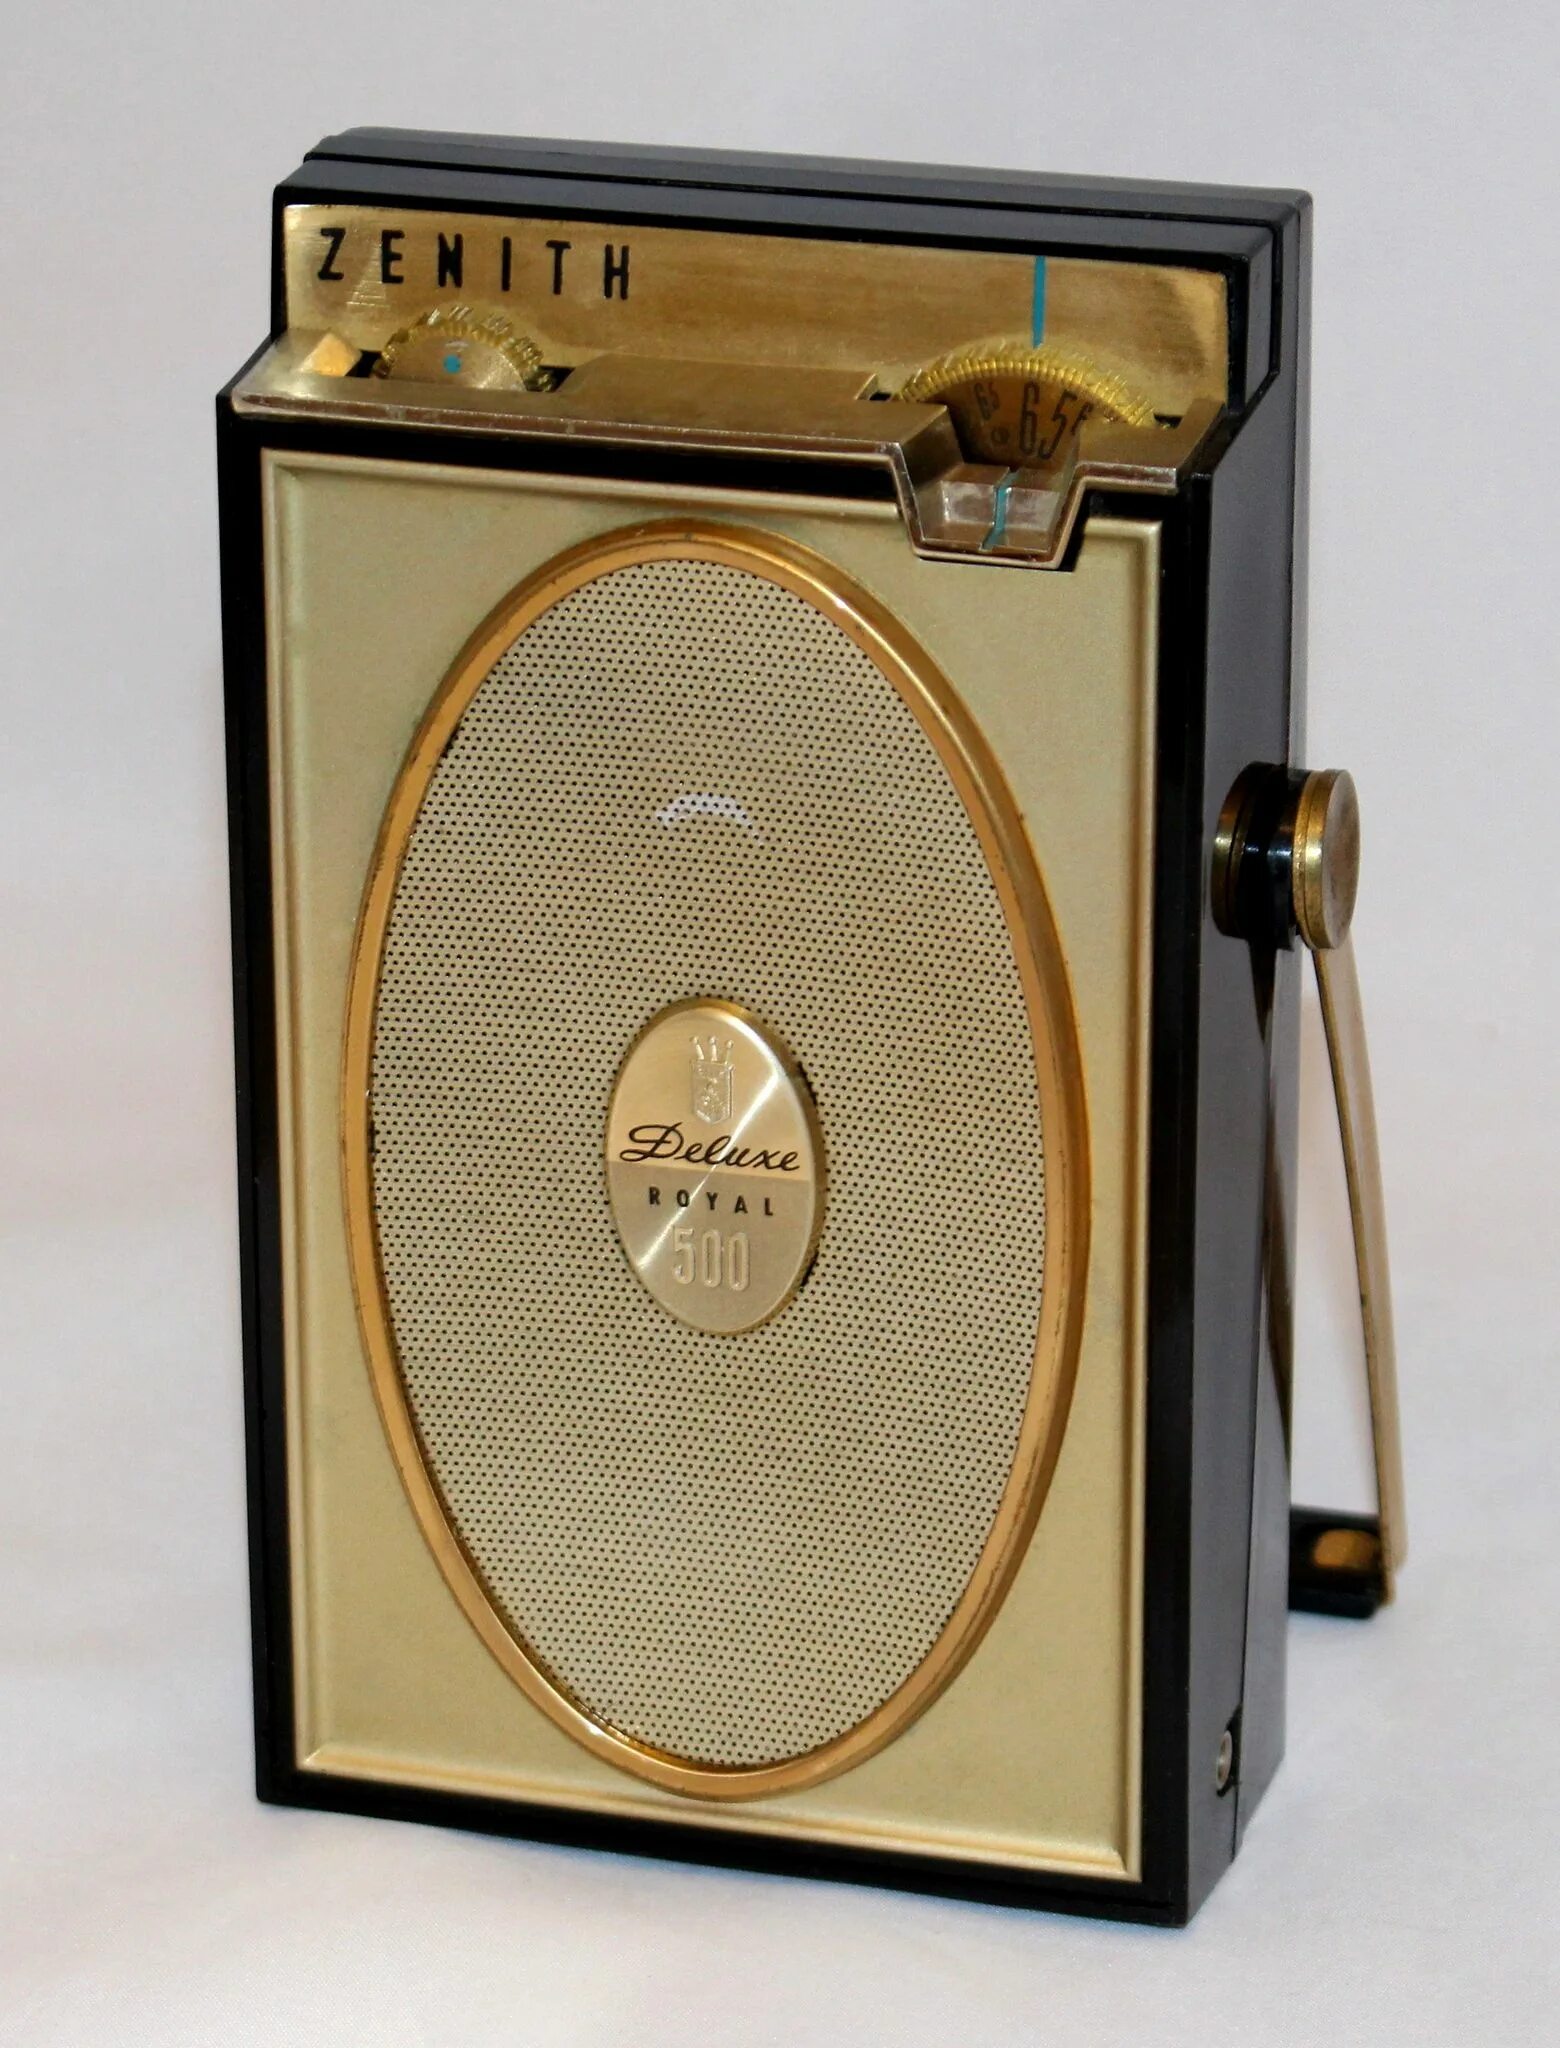 Радиоприемник Zenith Deluxe. Zenith Royal 500d. Радиоприемник 1961. Ретро радиоприемник.